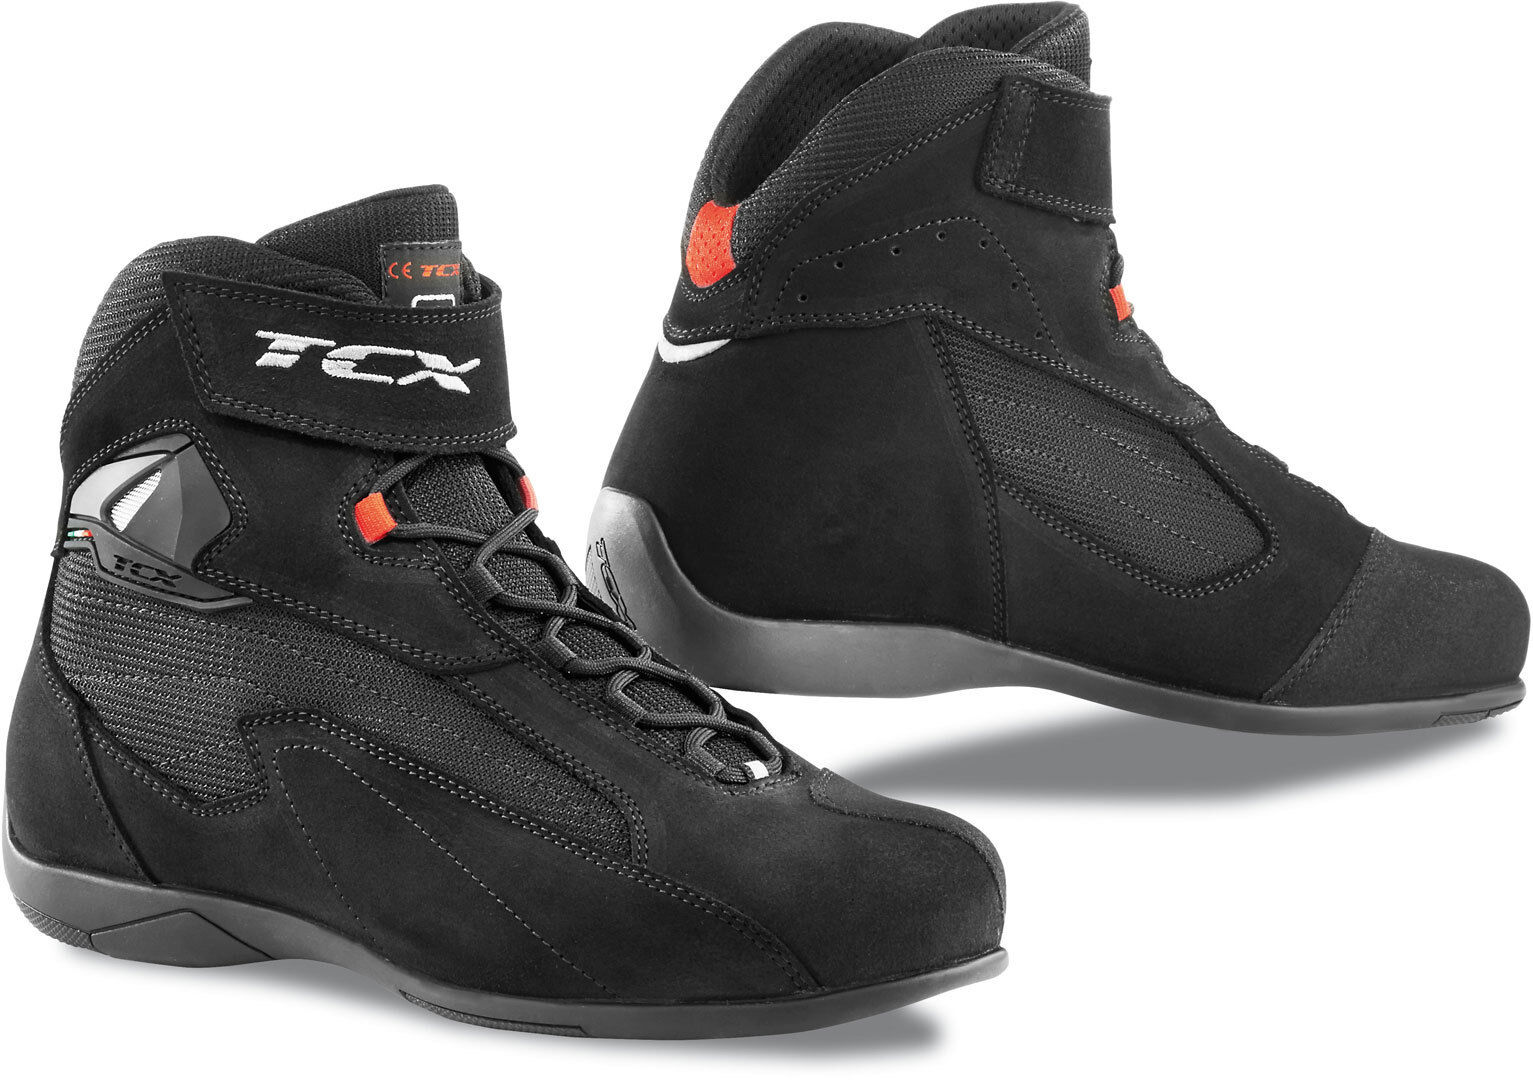 TCX Pulse Moottoripyörä kengät  - Musta - Size: 37